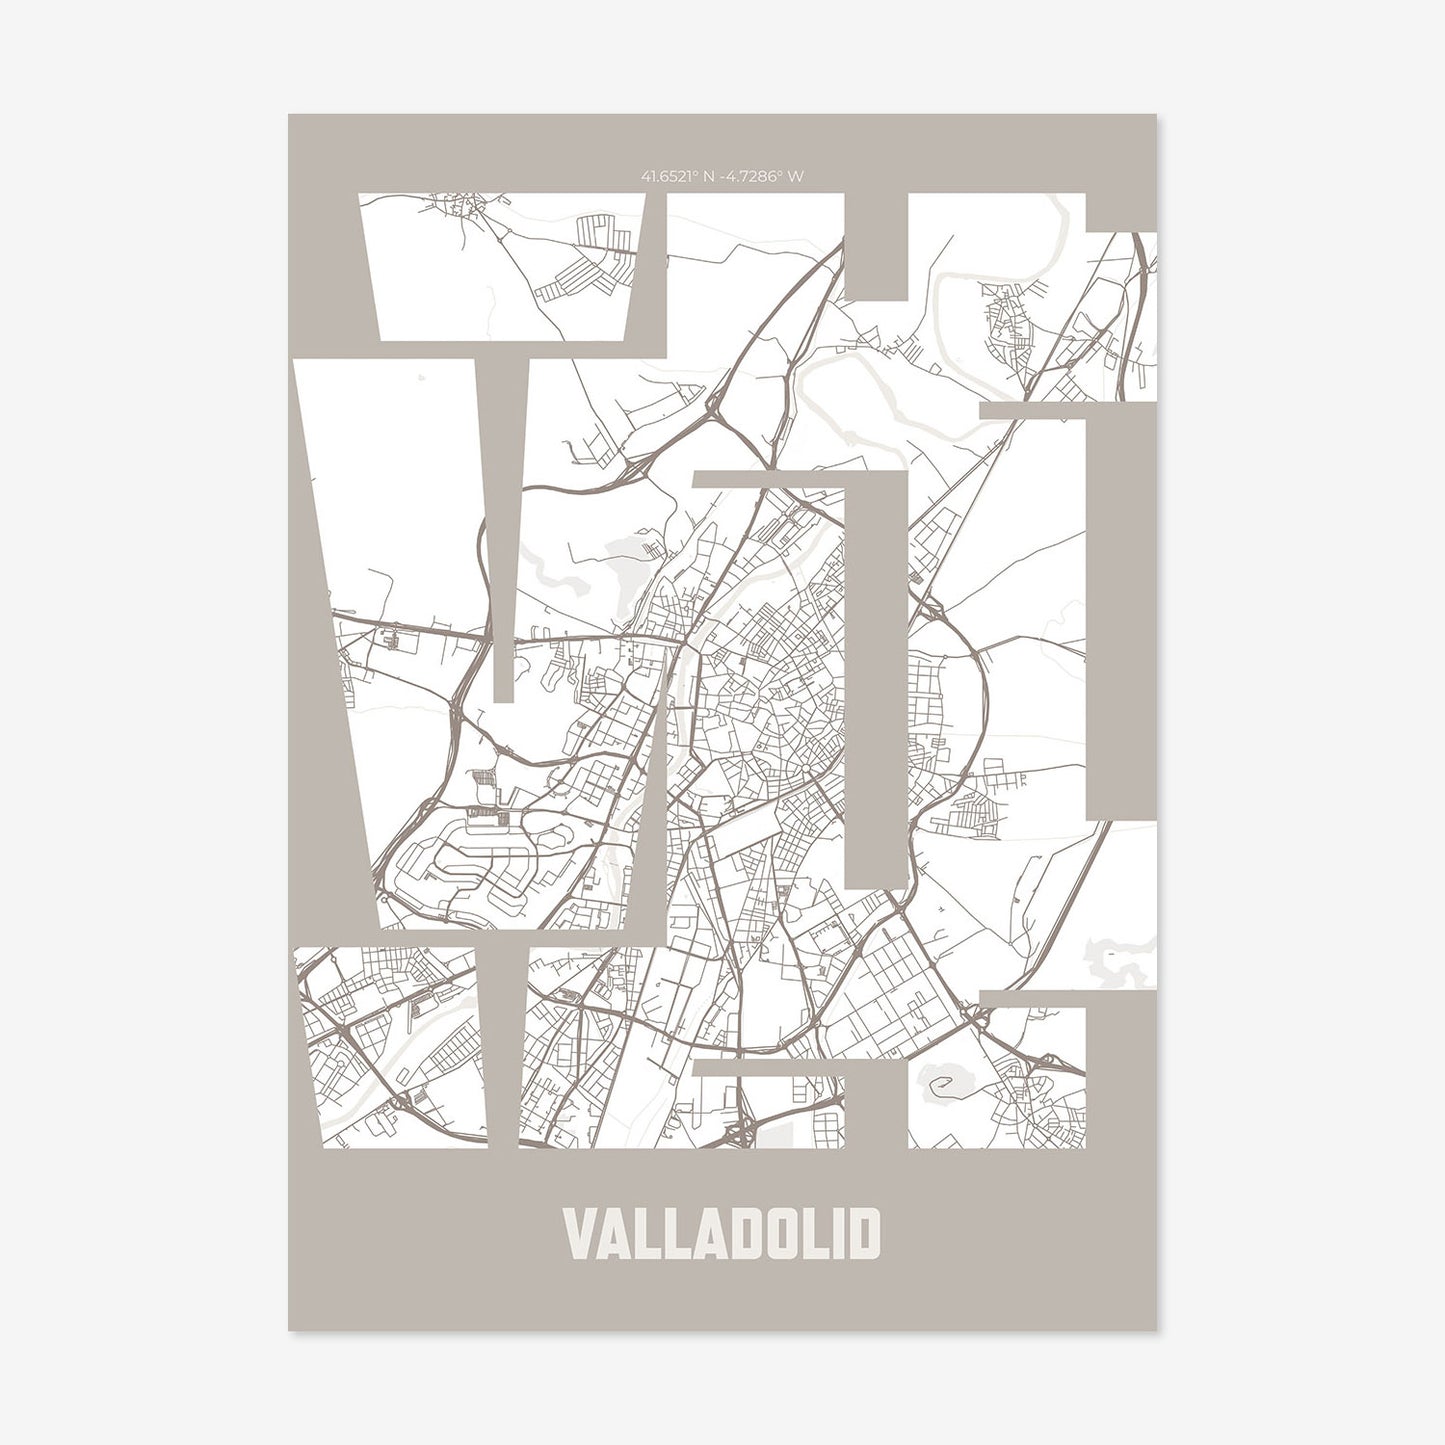 VLL Valladolid Poster